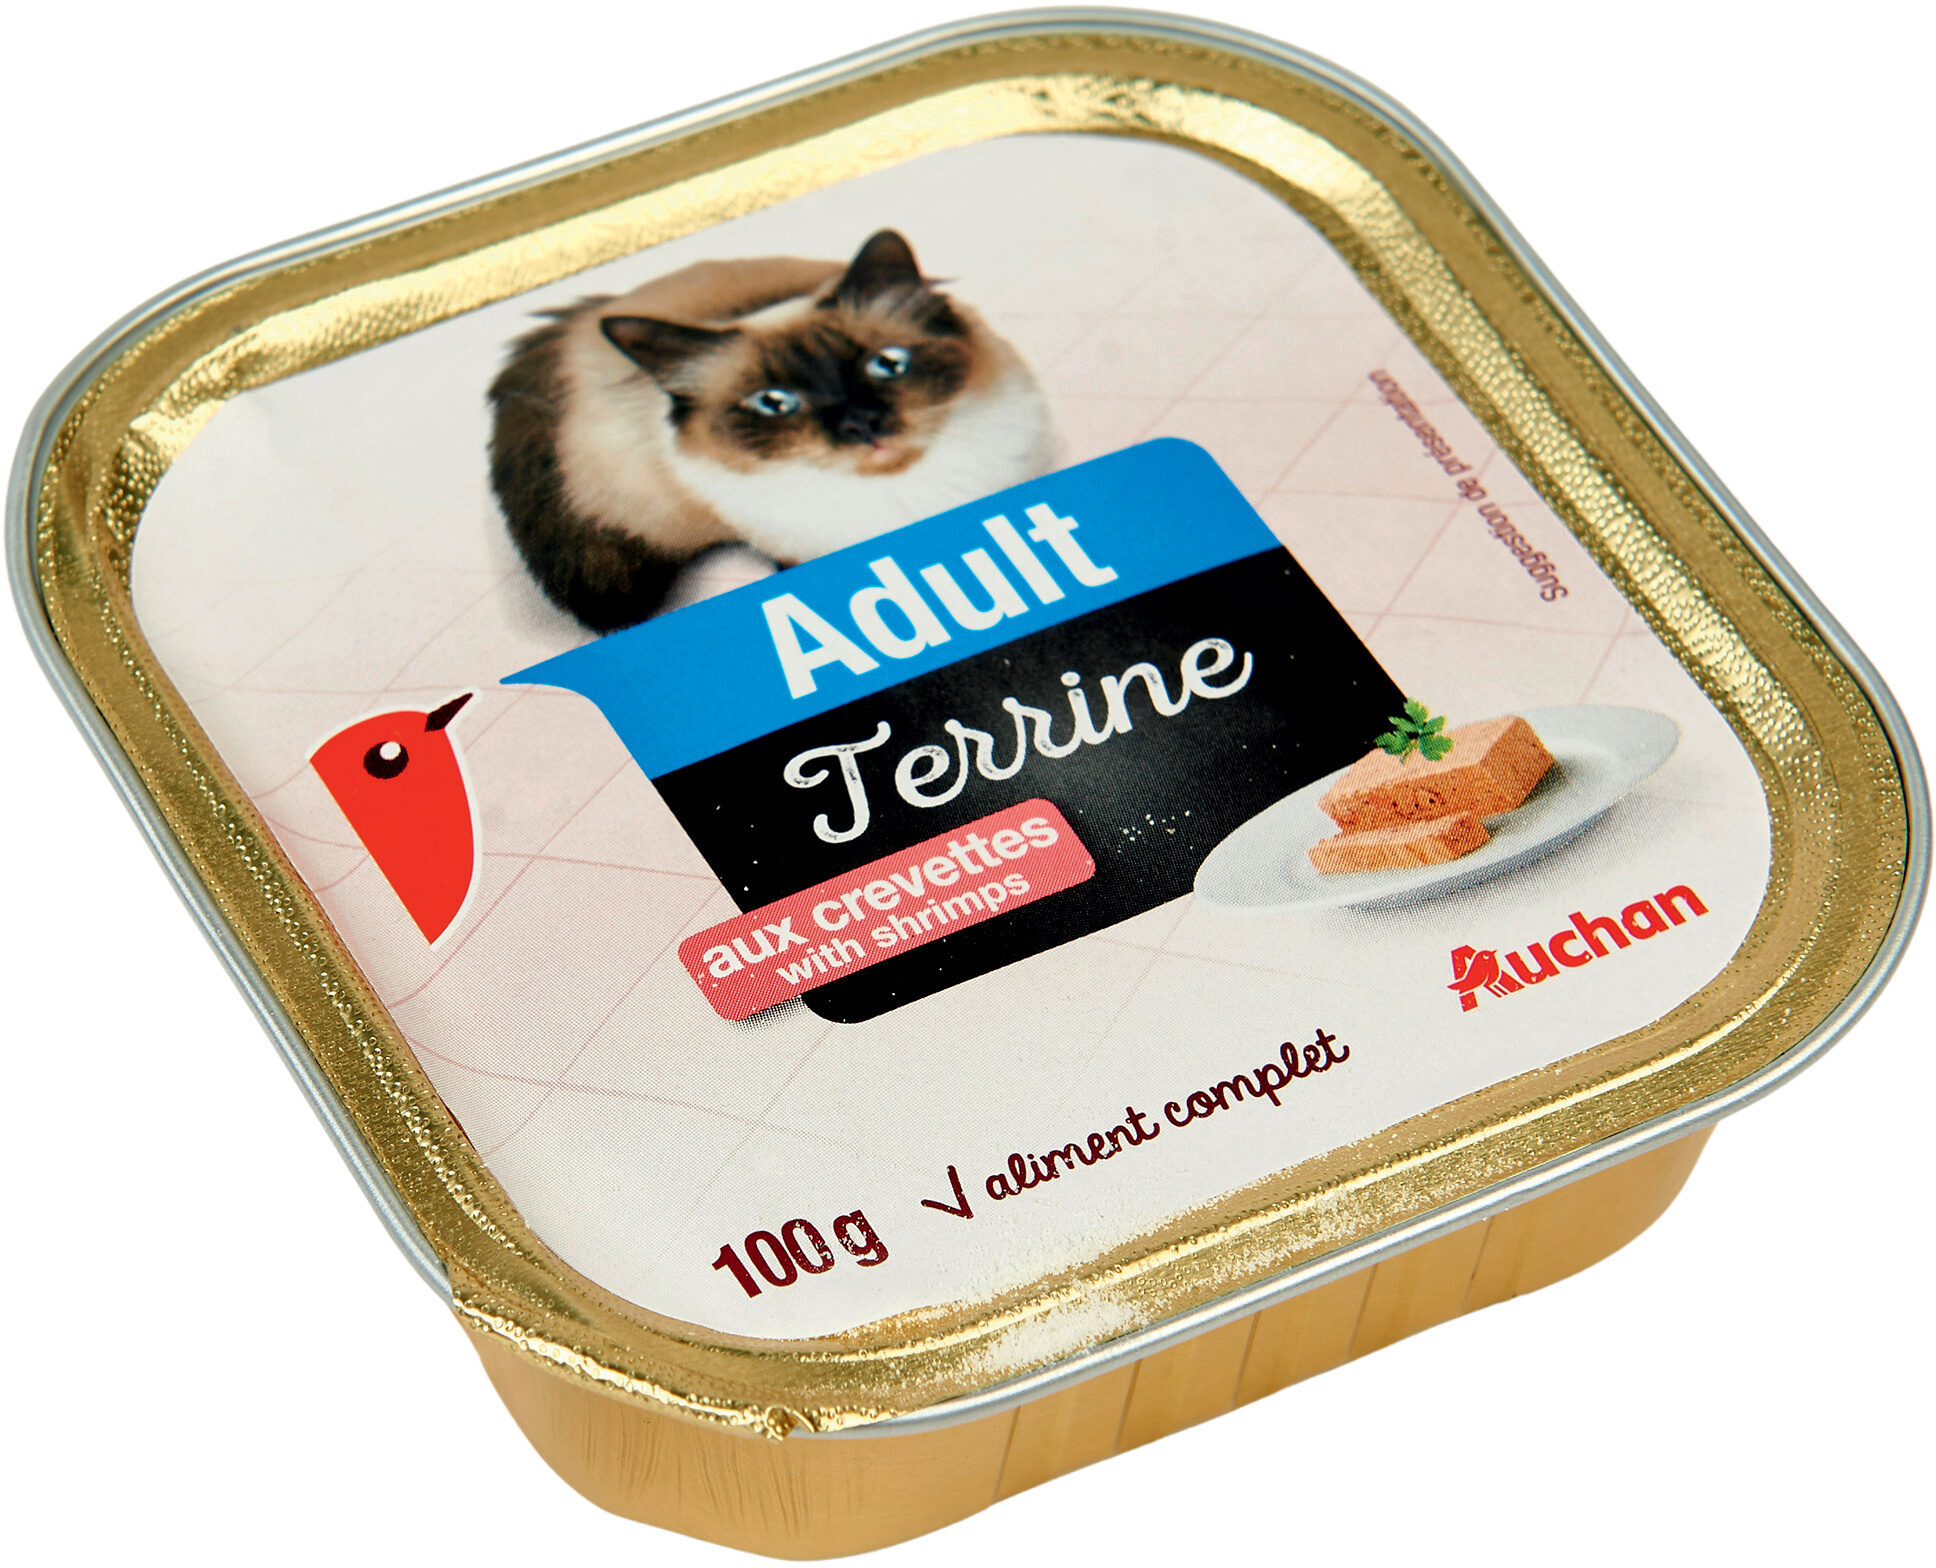 Adult - Terrine aux crevettes - Product - fr